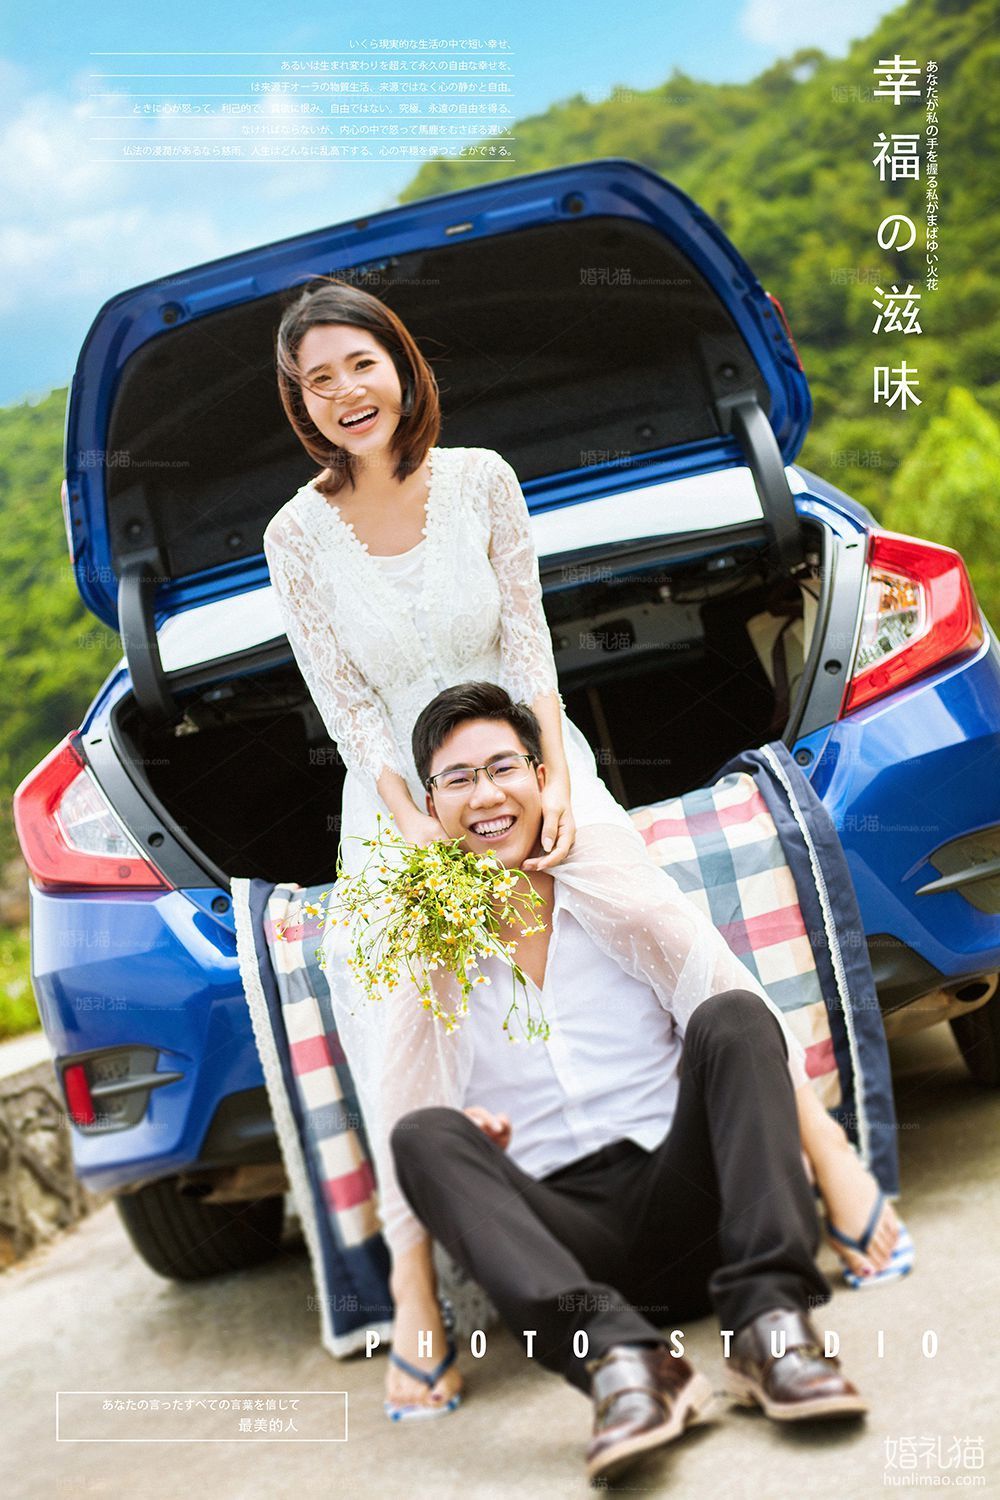 自然清新婚纱摄影|旅行车结婚照,[自然清新, 旅行车],广州婚纱照,婚纱照图片